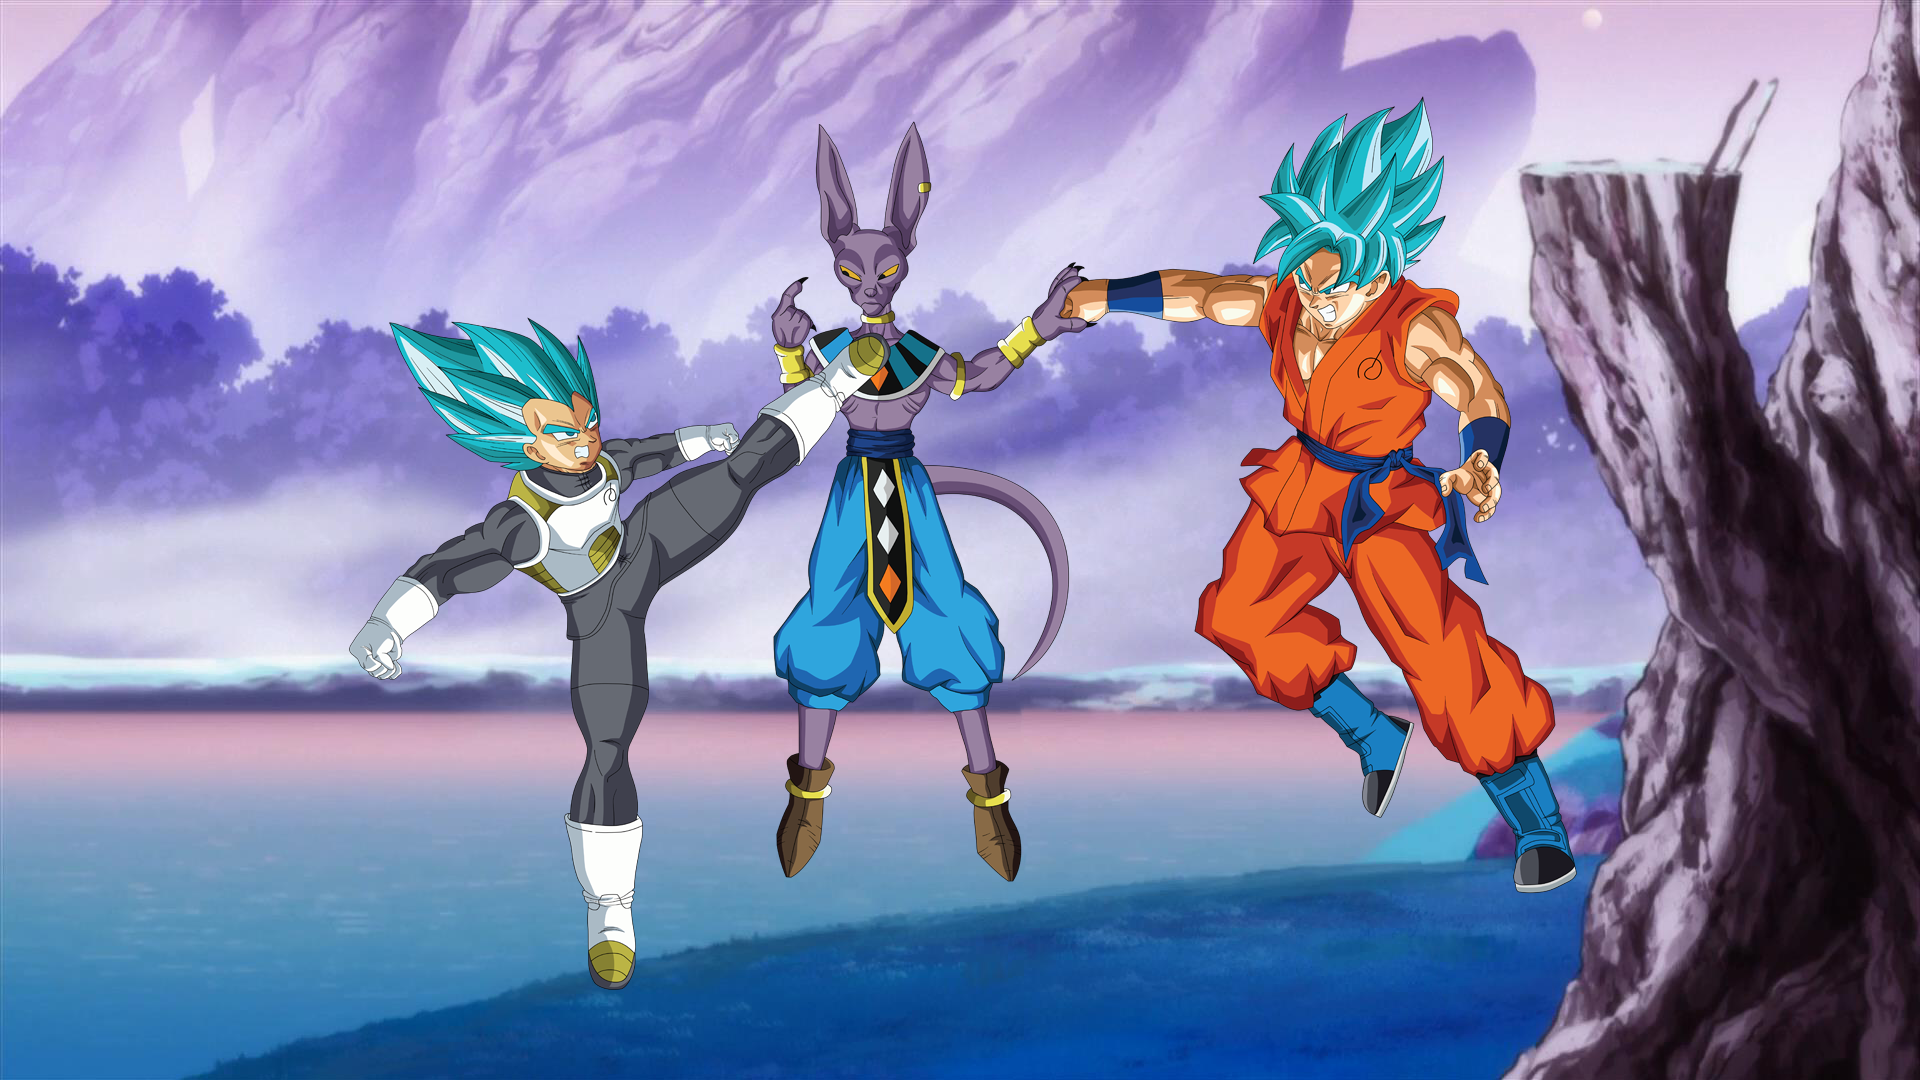 Beerus and Goku Super Saiyan God Anime Wallpaper 5k Ultra HD ID:3046